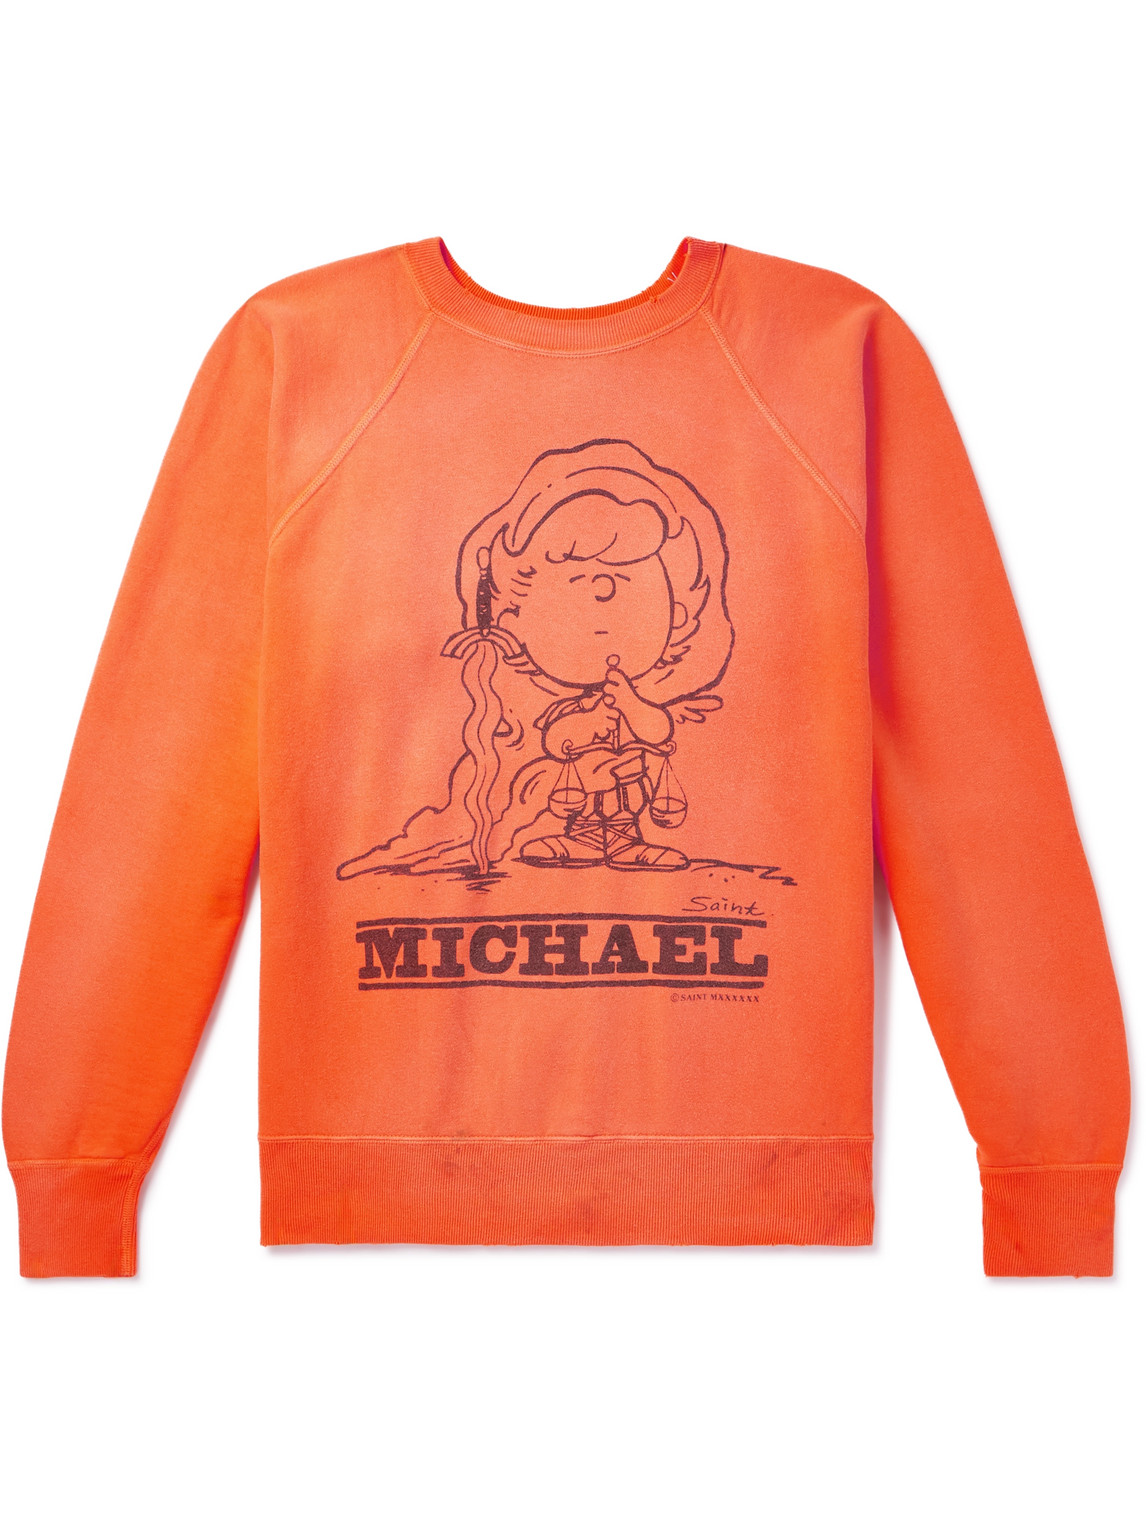 SAINT Mxxxxxx - Michael Distressed Printed Cotton-Jersey Sweatshirt - Men - Orange - M von SAINT Mxxxxxx